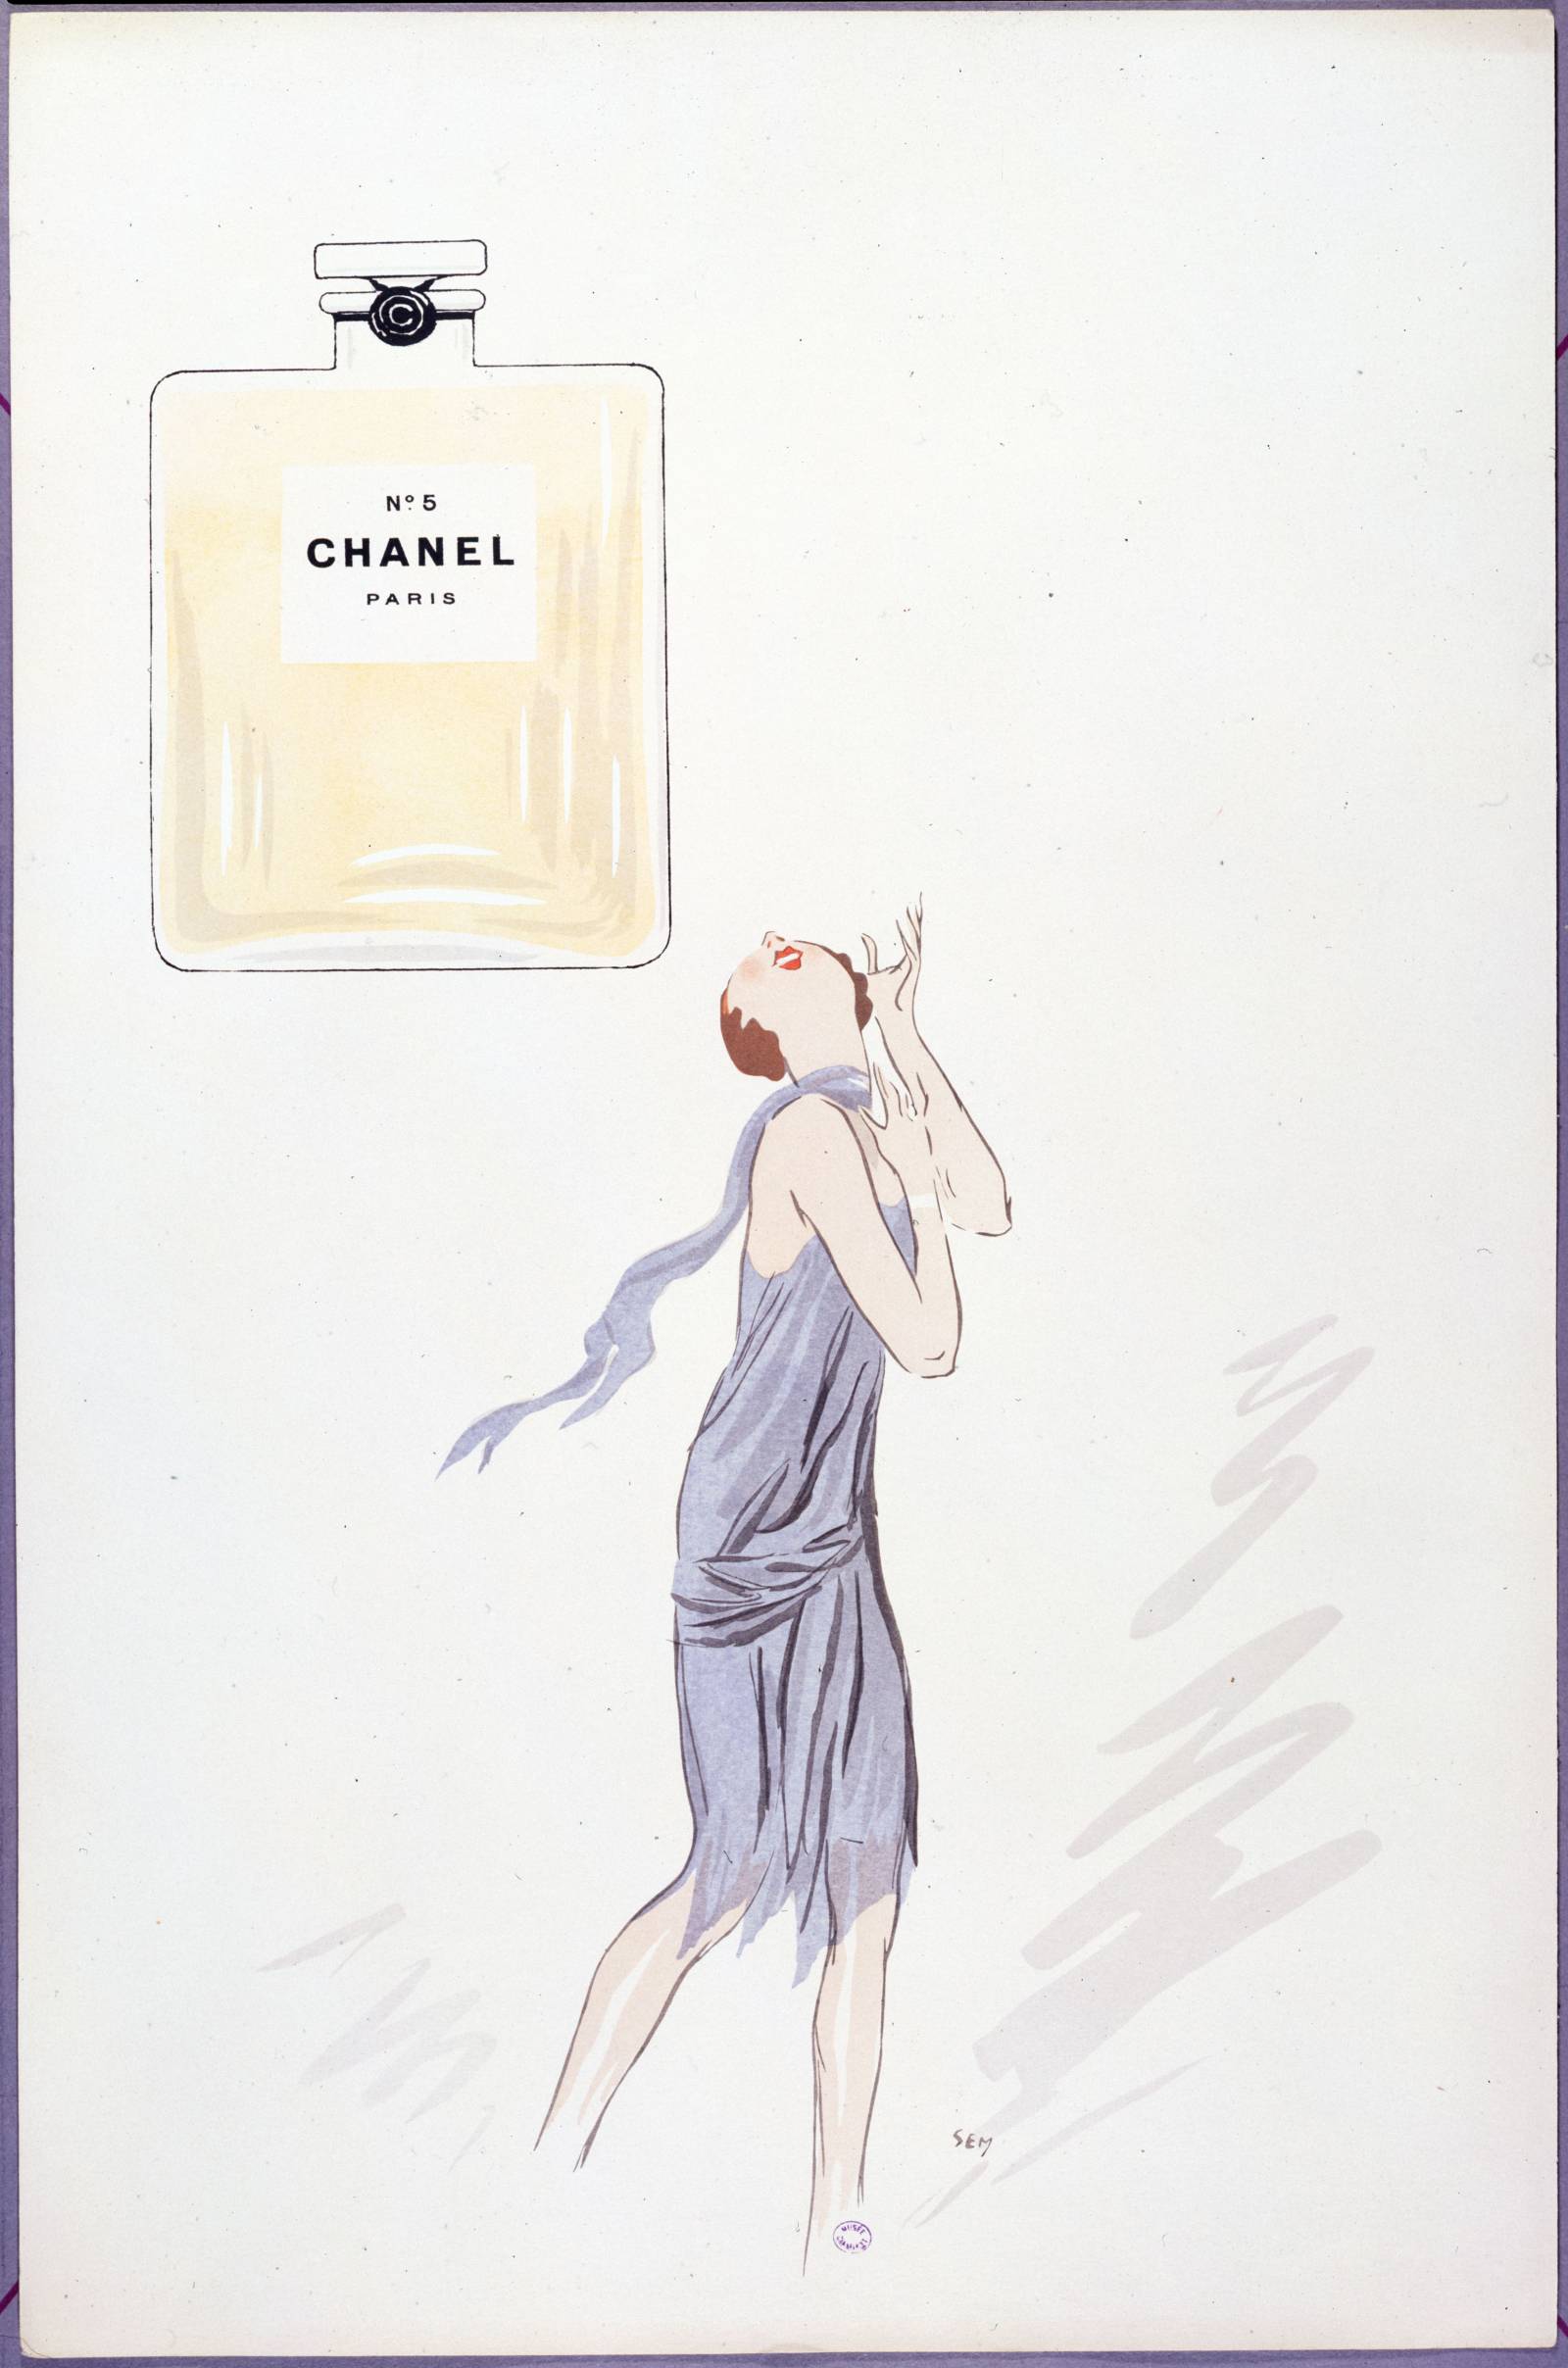 Sem (właśc. Georges Gouarsat), litografia perfum CHANEL N°5, „The New York Times”, 1924 (Fot. © Paris Musées, Musée Carnavalet, Histoire de Paris)